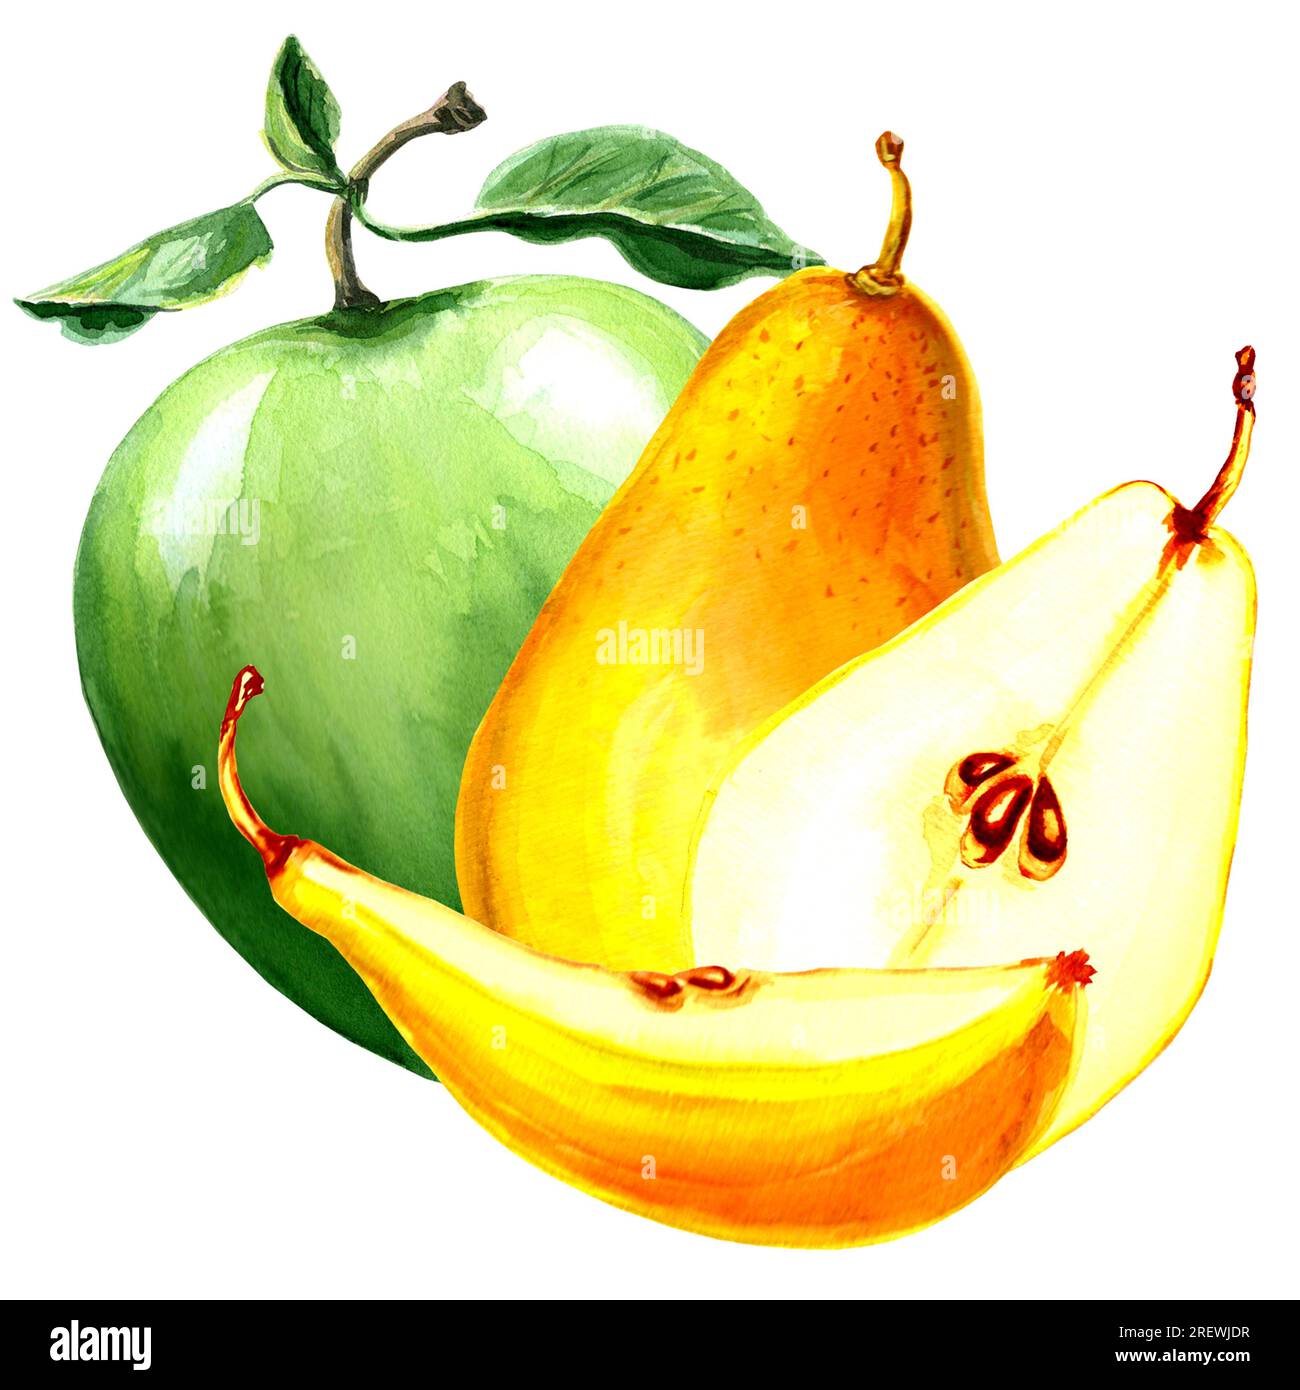 Aquarell Darstellung von gelber Birne und grünem Apfel. Handgezeichnete Aquarell-JPEG-Grafik für Design, Stoffe, Geschenkpapier, Tapeten, Deckblätter Stockfoto